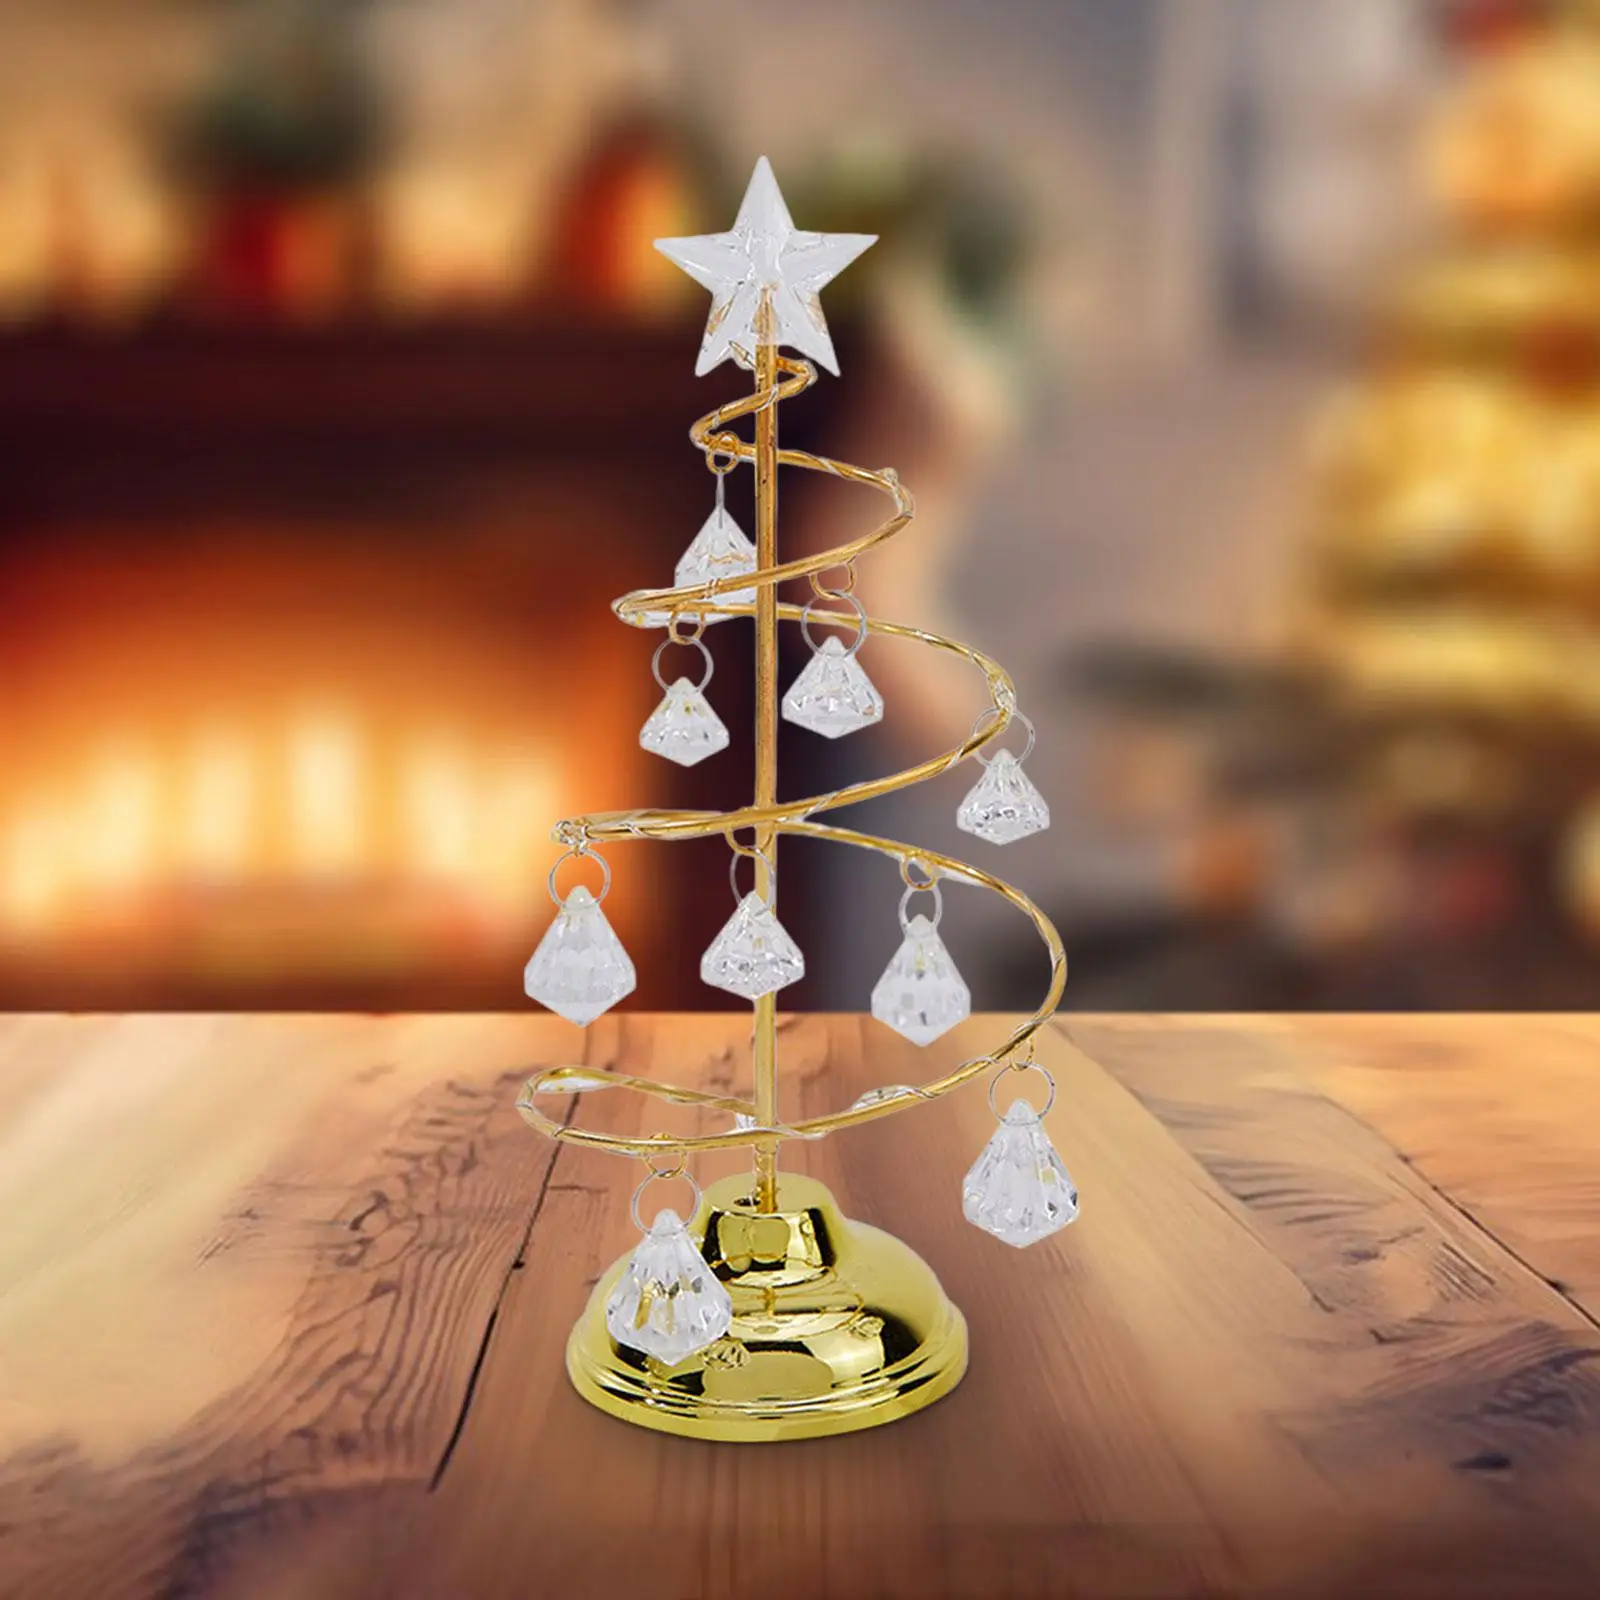 Crystal Spiral Christmas Tree Lamp Christmas Tree Light with Metal Stand Acrylic Balls for Wedding Tabletop Winter Home Xmas